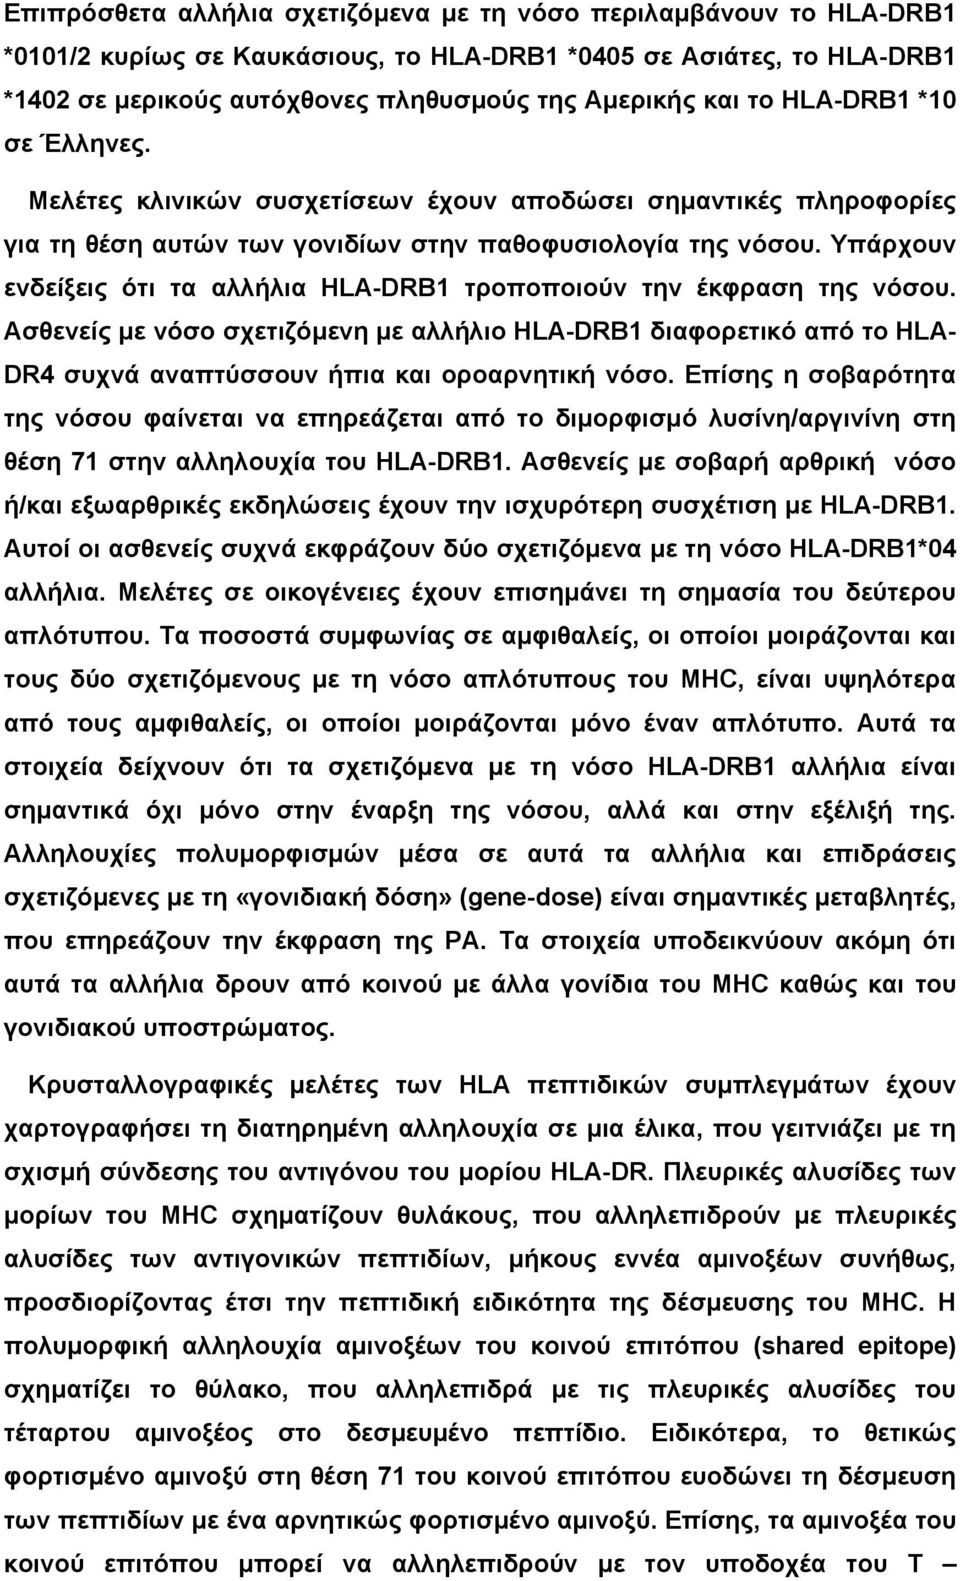 Υπάρχουν ενδείξεις ότι τα αλλήλια HLA-DRB1 τροποποιούν την έκφραση της νόσου. Ασθενείς µε νόσο σχετιζόµενη µε αλλήλιο HLA-DRB1 διαφορετικό από το HLA- DR4 συχνά αναπτύσσουν ήπια και οροαρνητική νόσο.